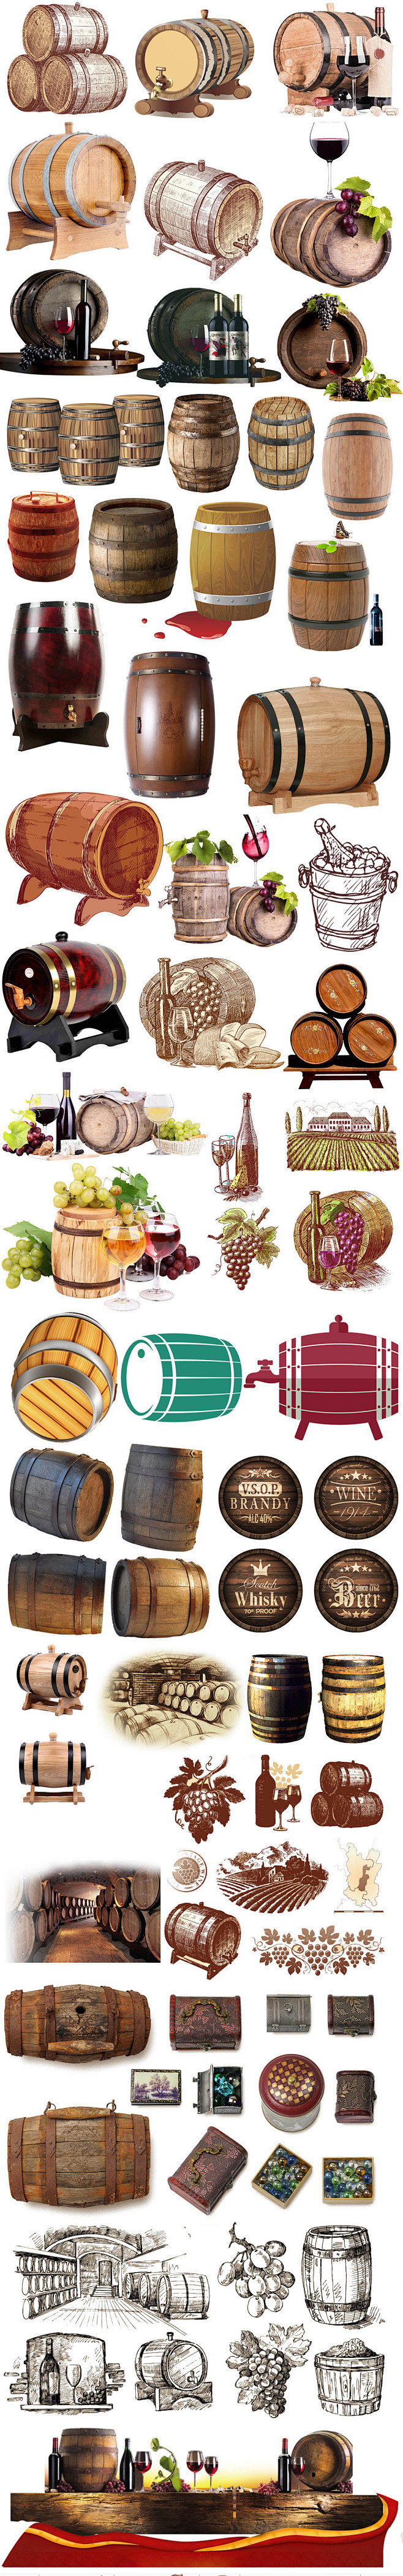 酒桶   庄园葡萄酒 葡萄酒桶 木桶图片...